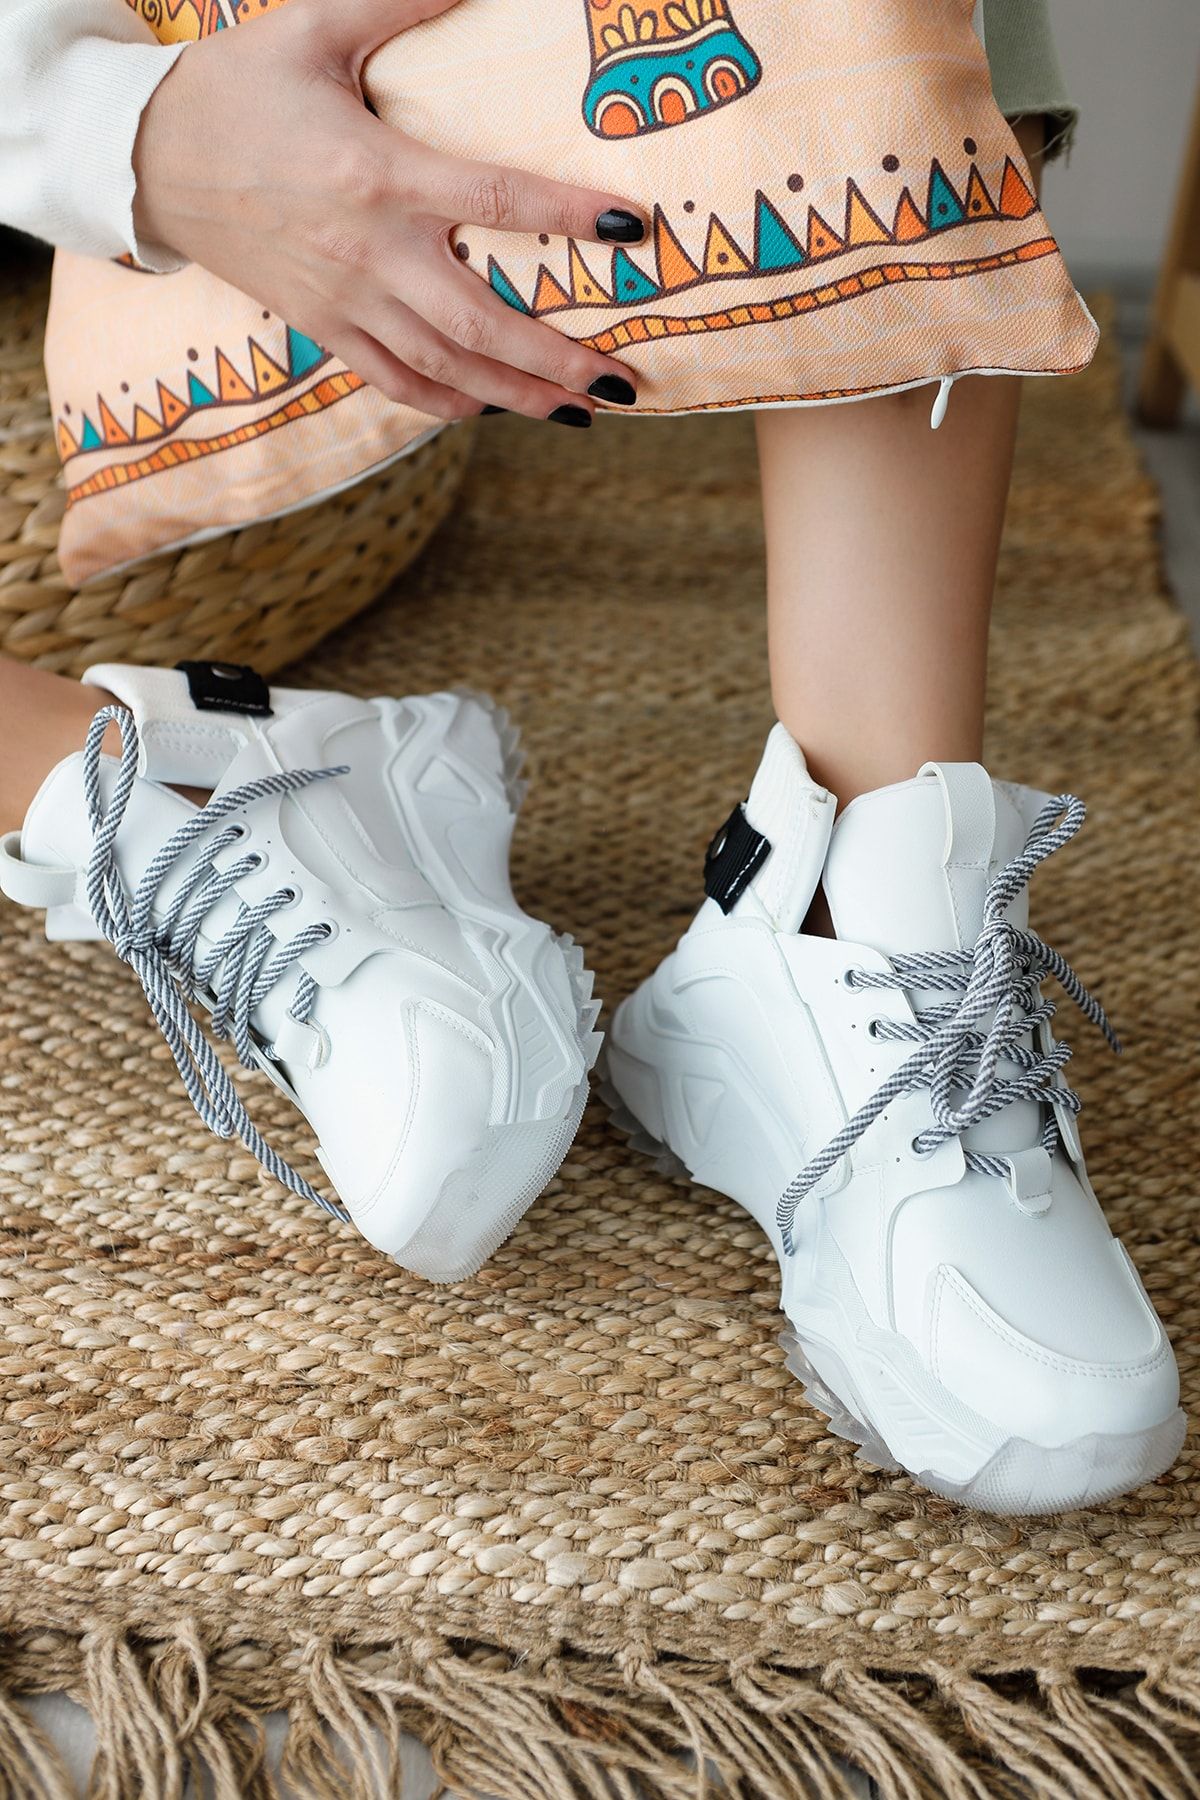 Limoya Venus Beyaz Kalın Tabanlı Bağcıklı Fermuarlı Spor Sneakers